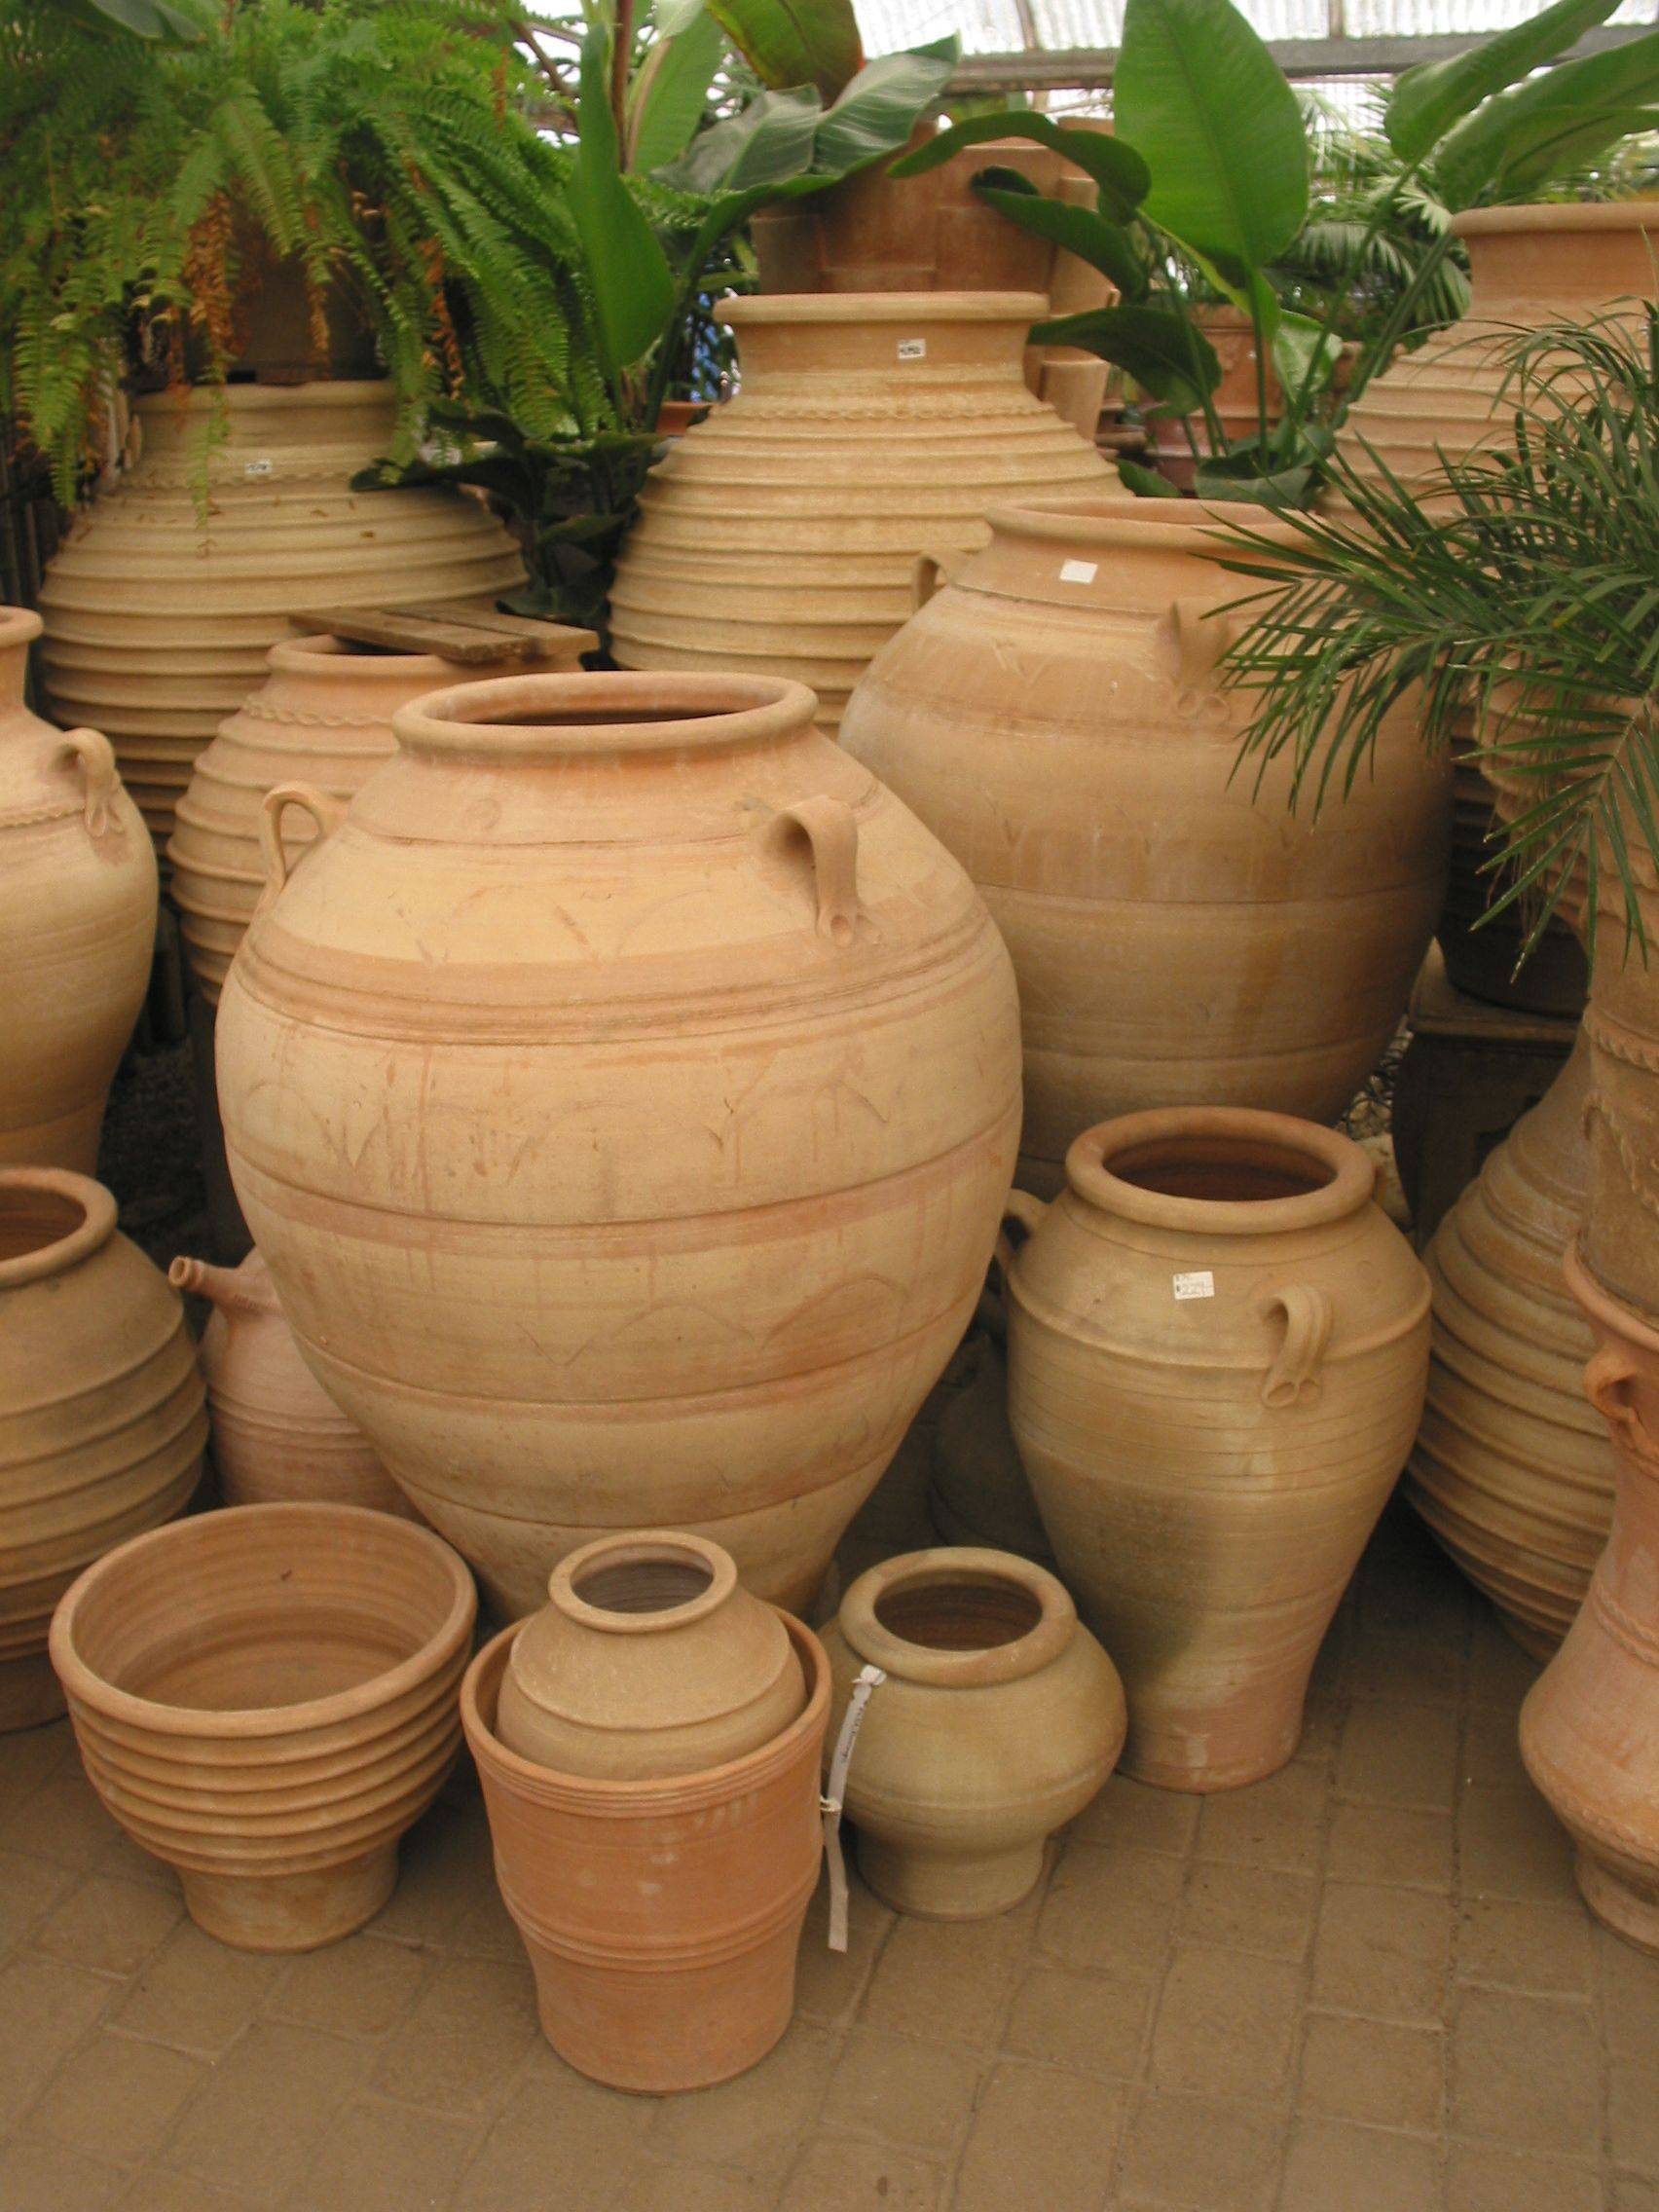 Large Ceramic Outdoor Planters Ideas